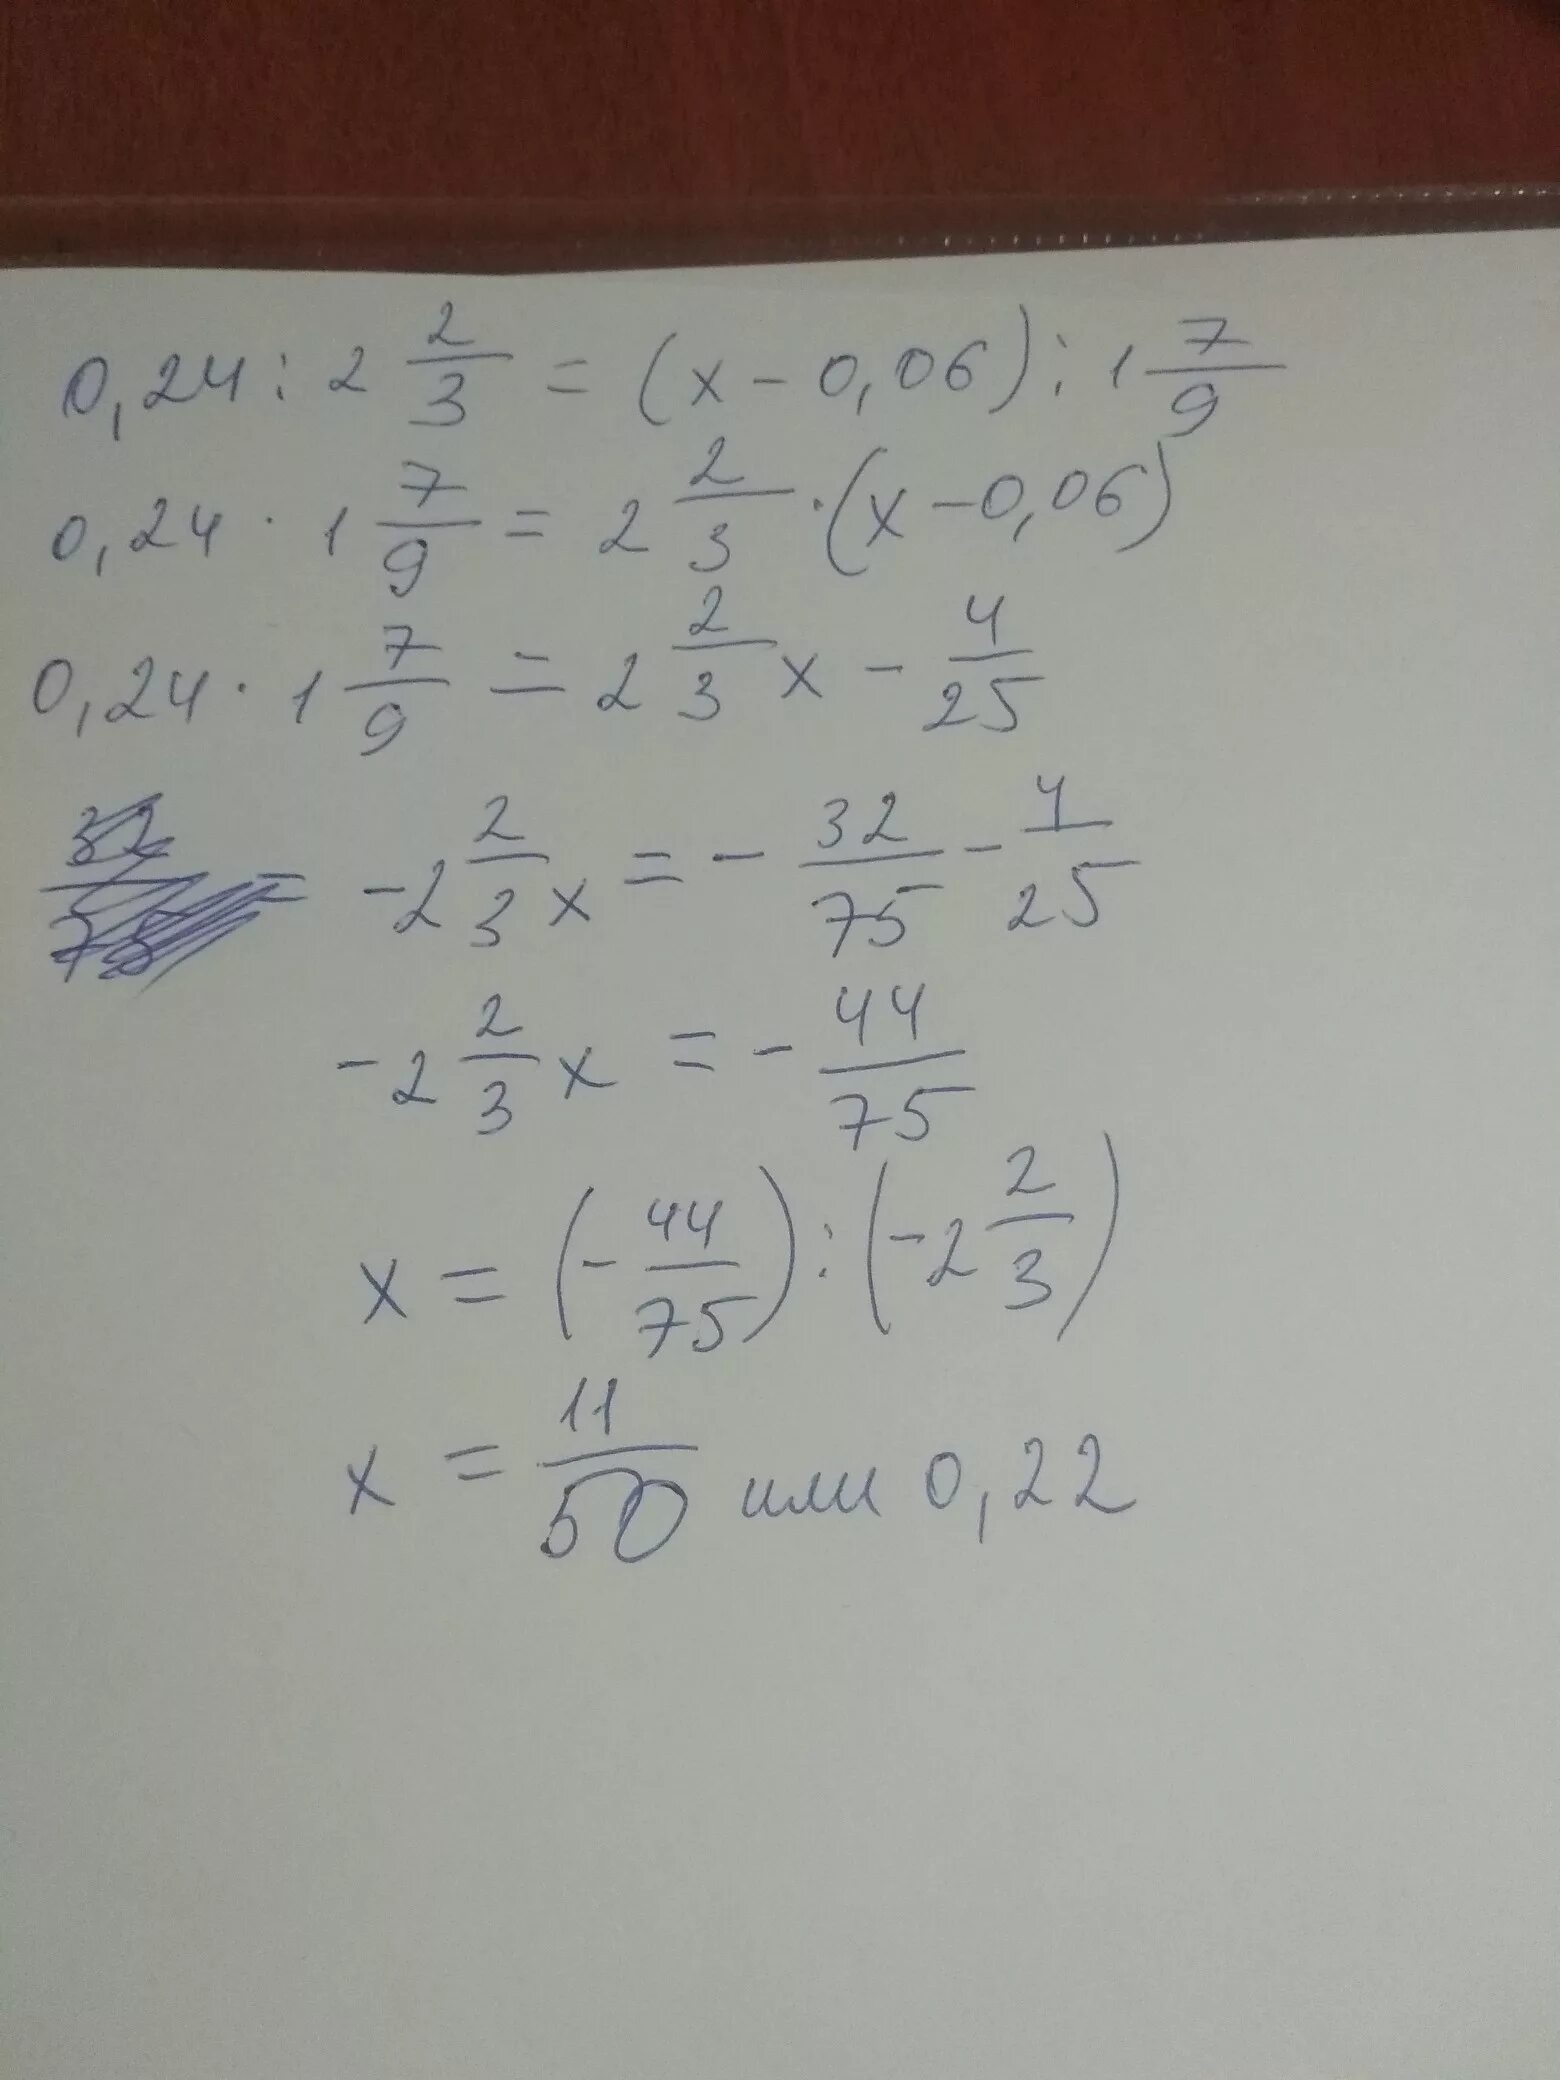 2 2 3 0 24 1 7 9 Х 0 06. 0,3^0х ((0,3^2)^3)^2:(0,3^3)^3. 0,6:1,7=0,06/Х. -0,3х<9,6. 12 х 0 9 0 6